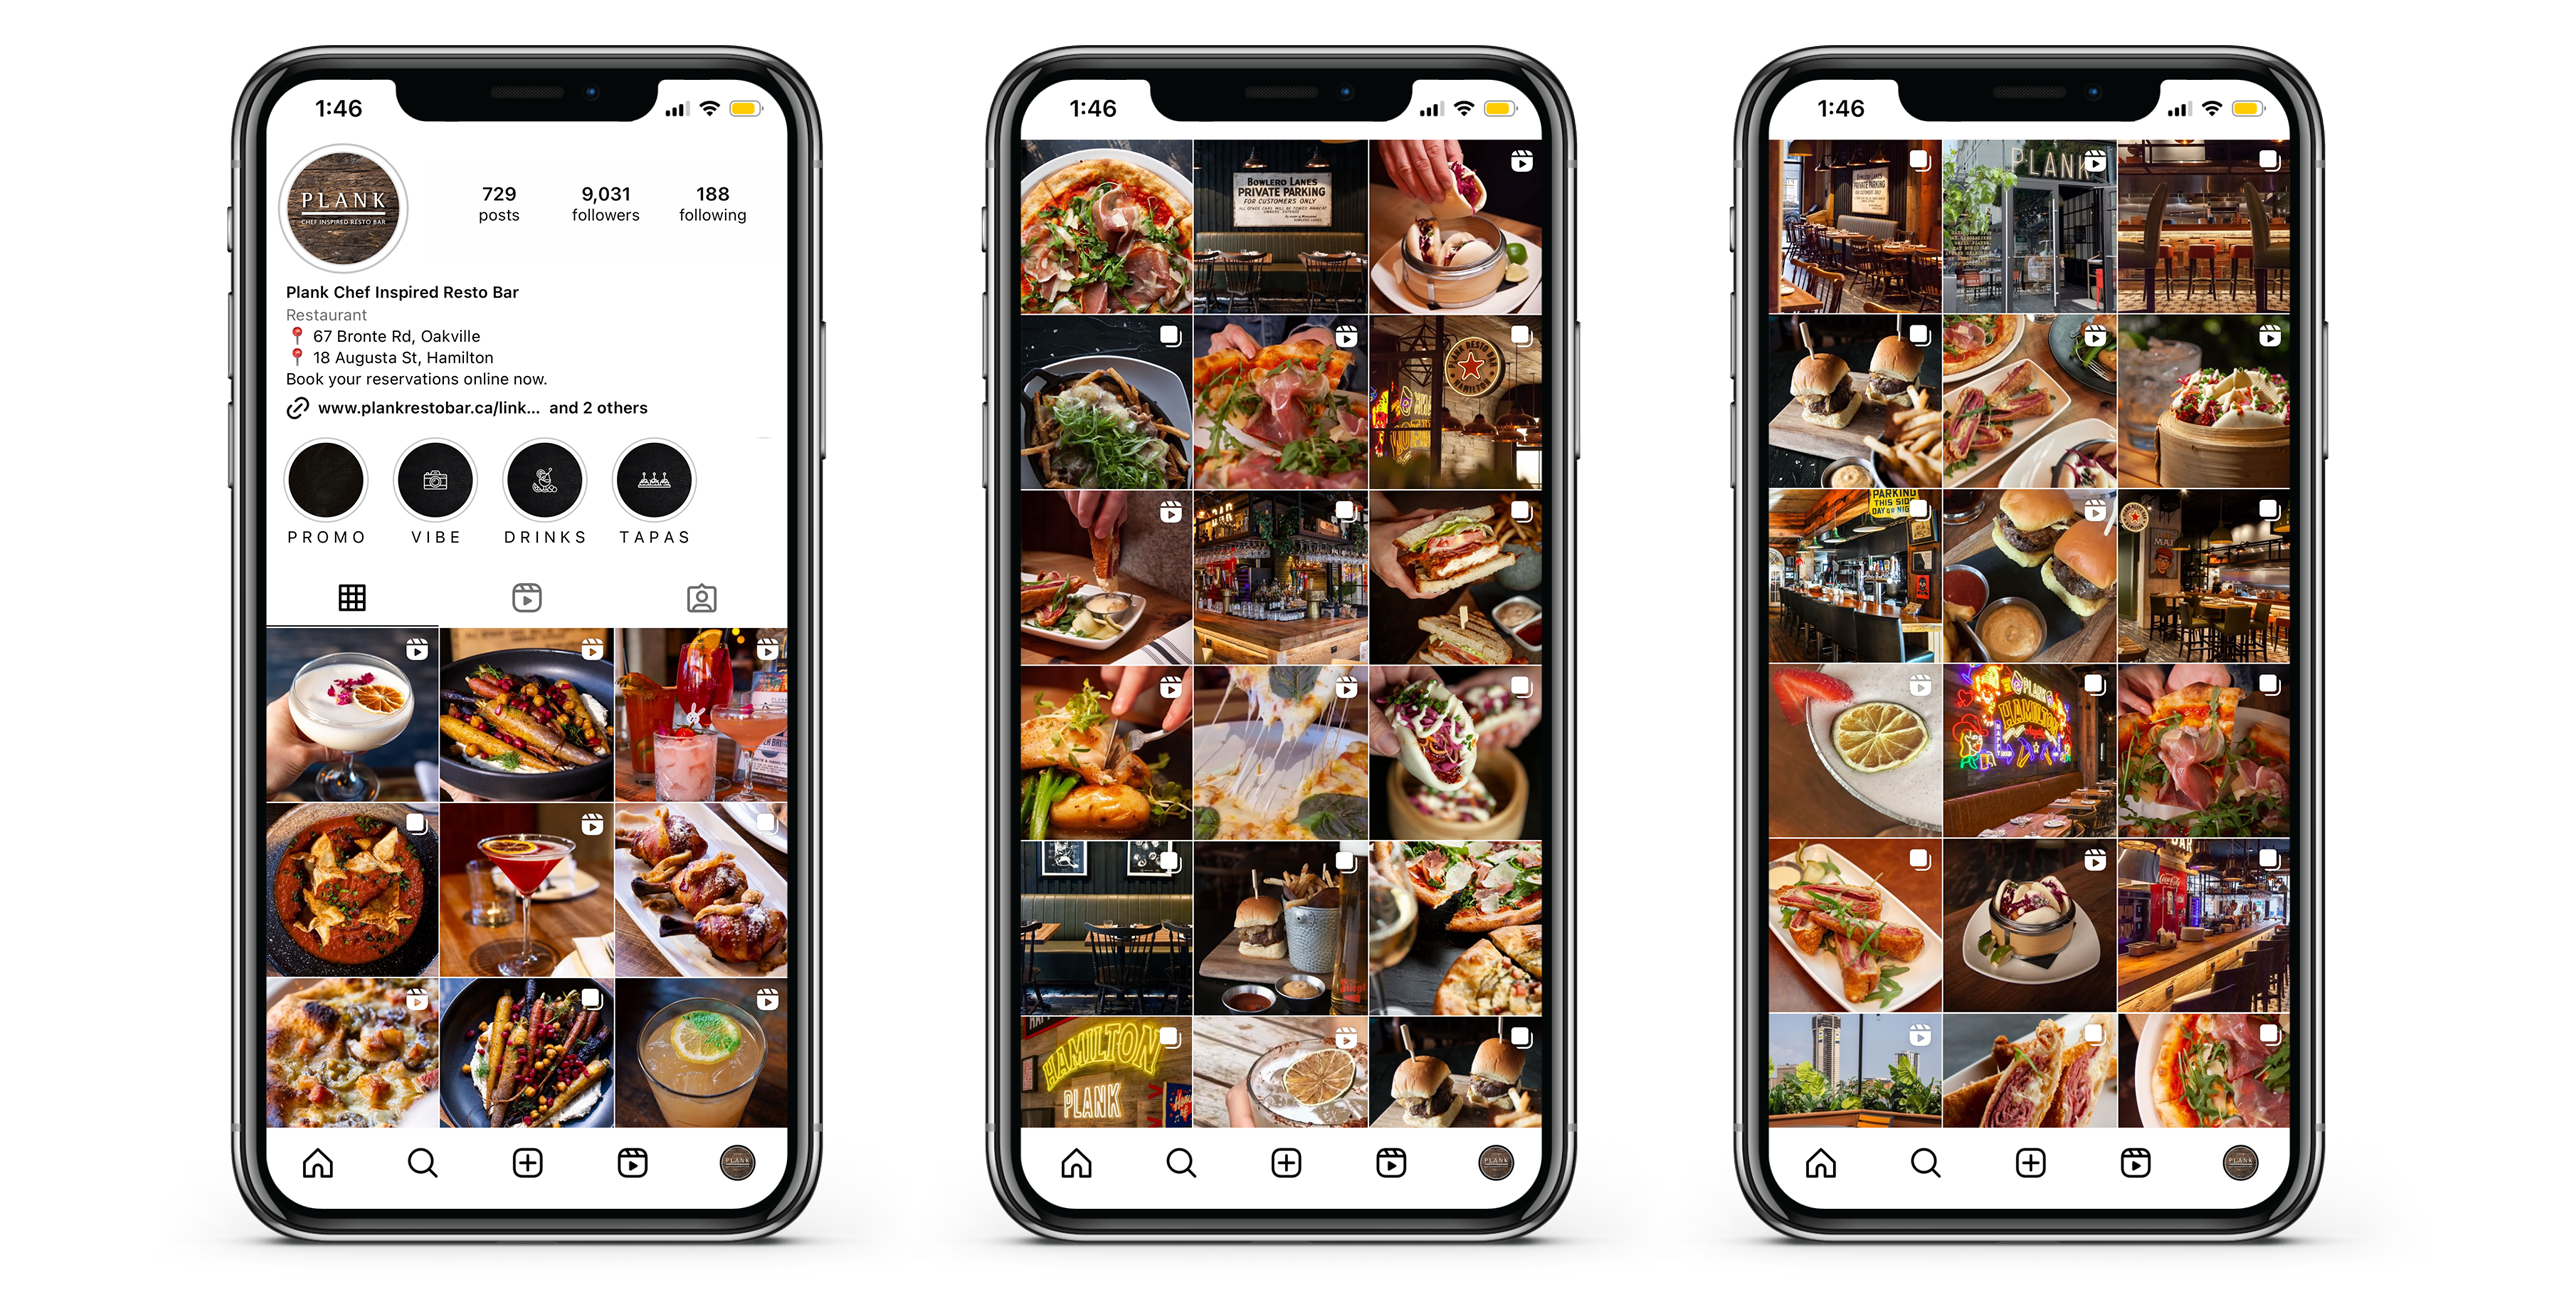 Plank Restobar restaurant bar social media content creation management Instagram feed